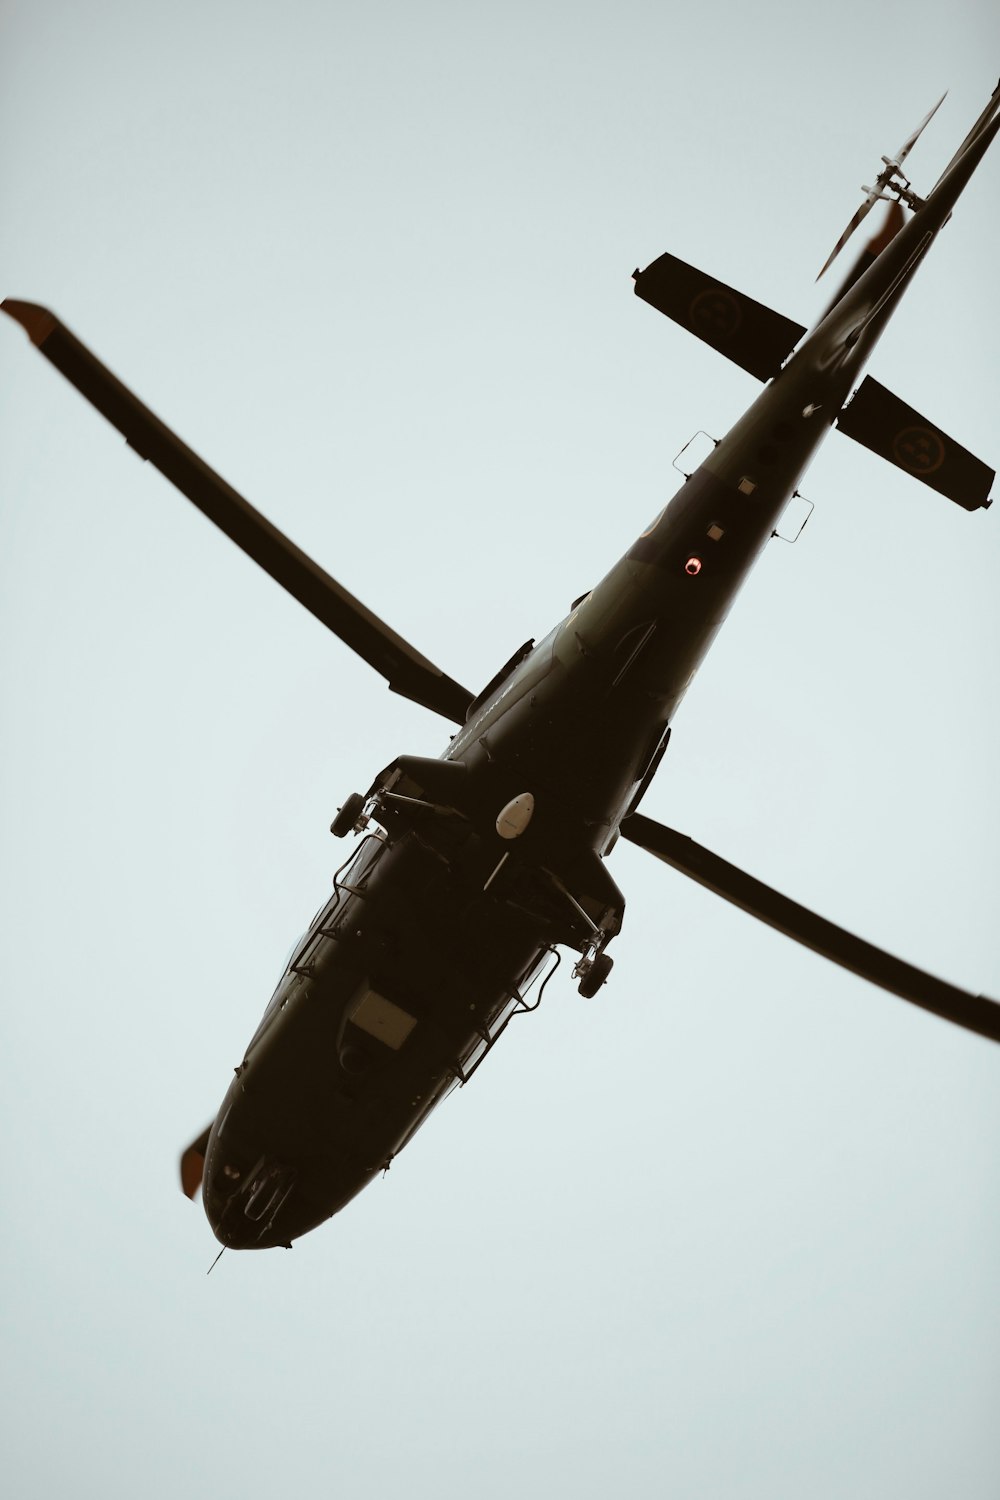 하늘에 갈색 헬리콥터